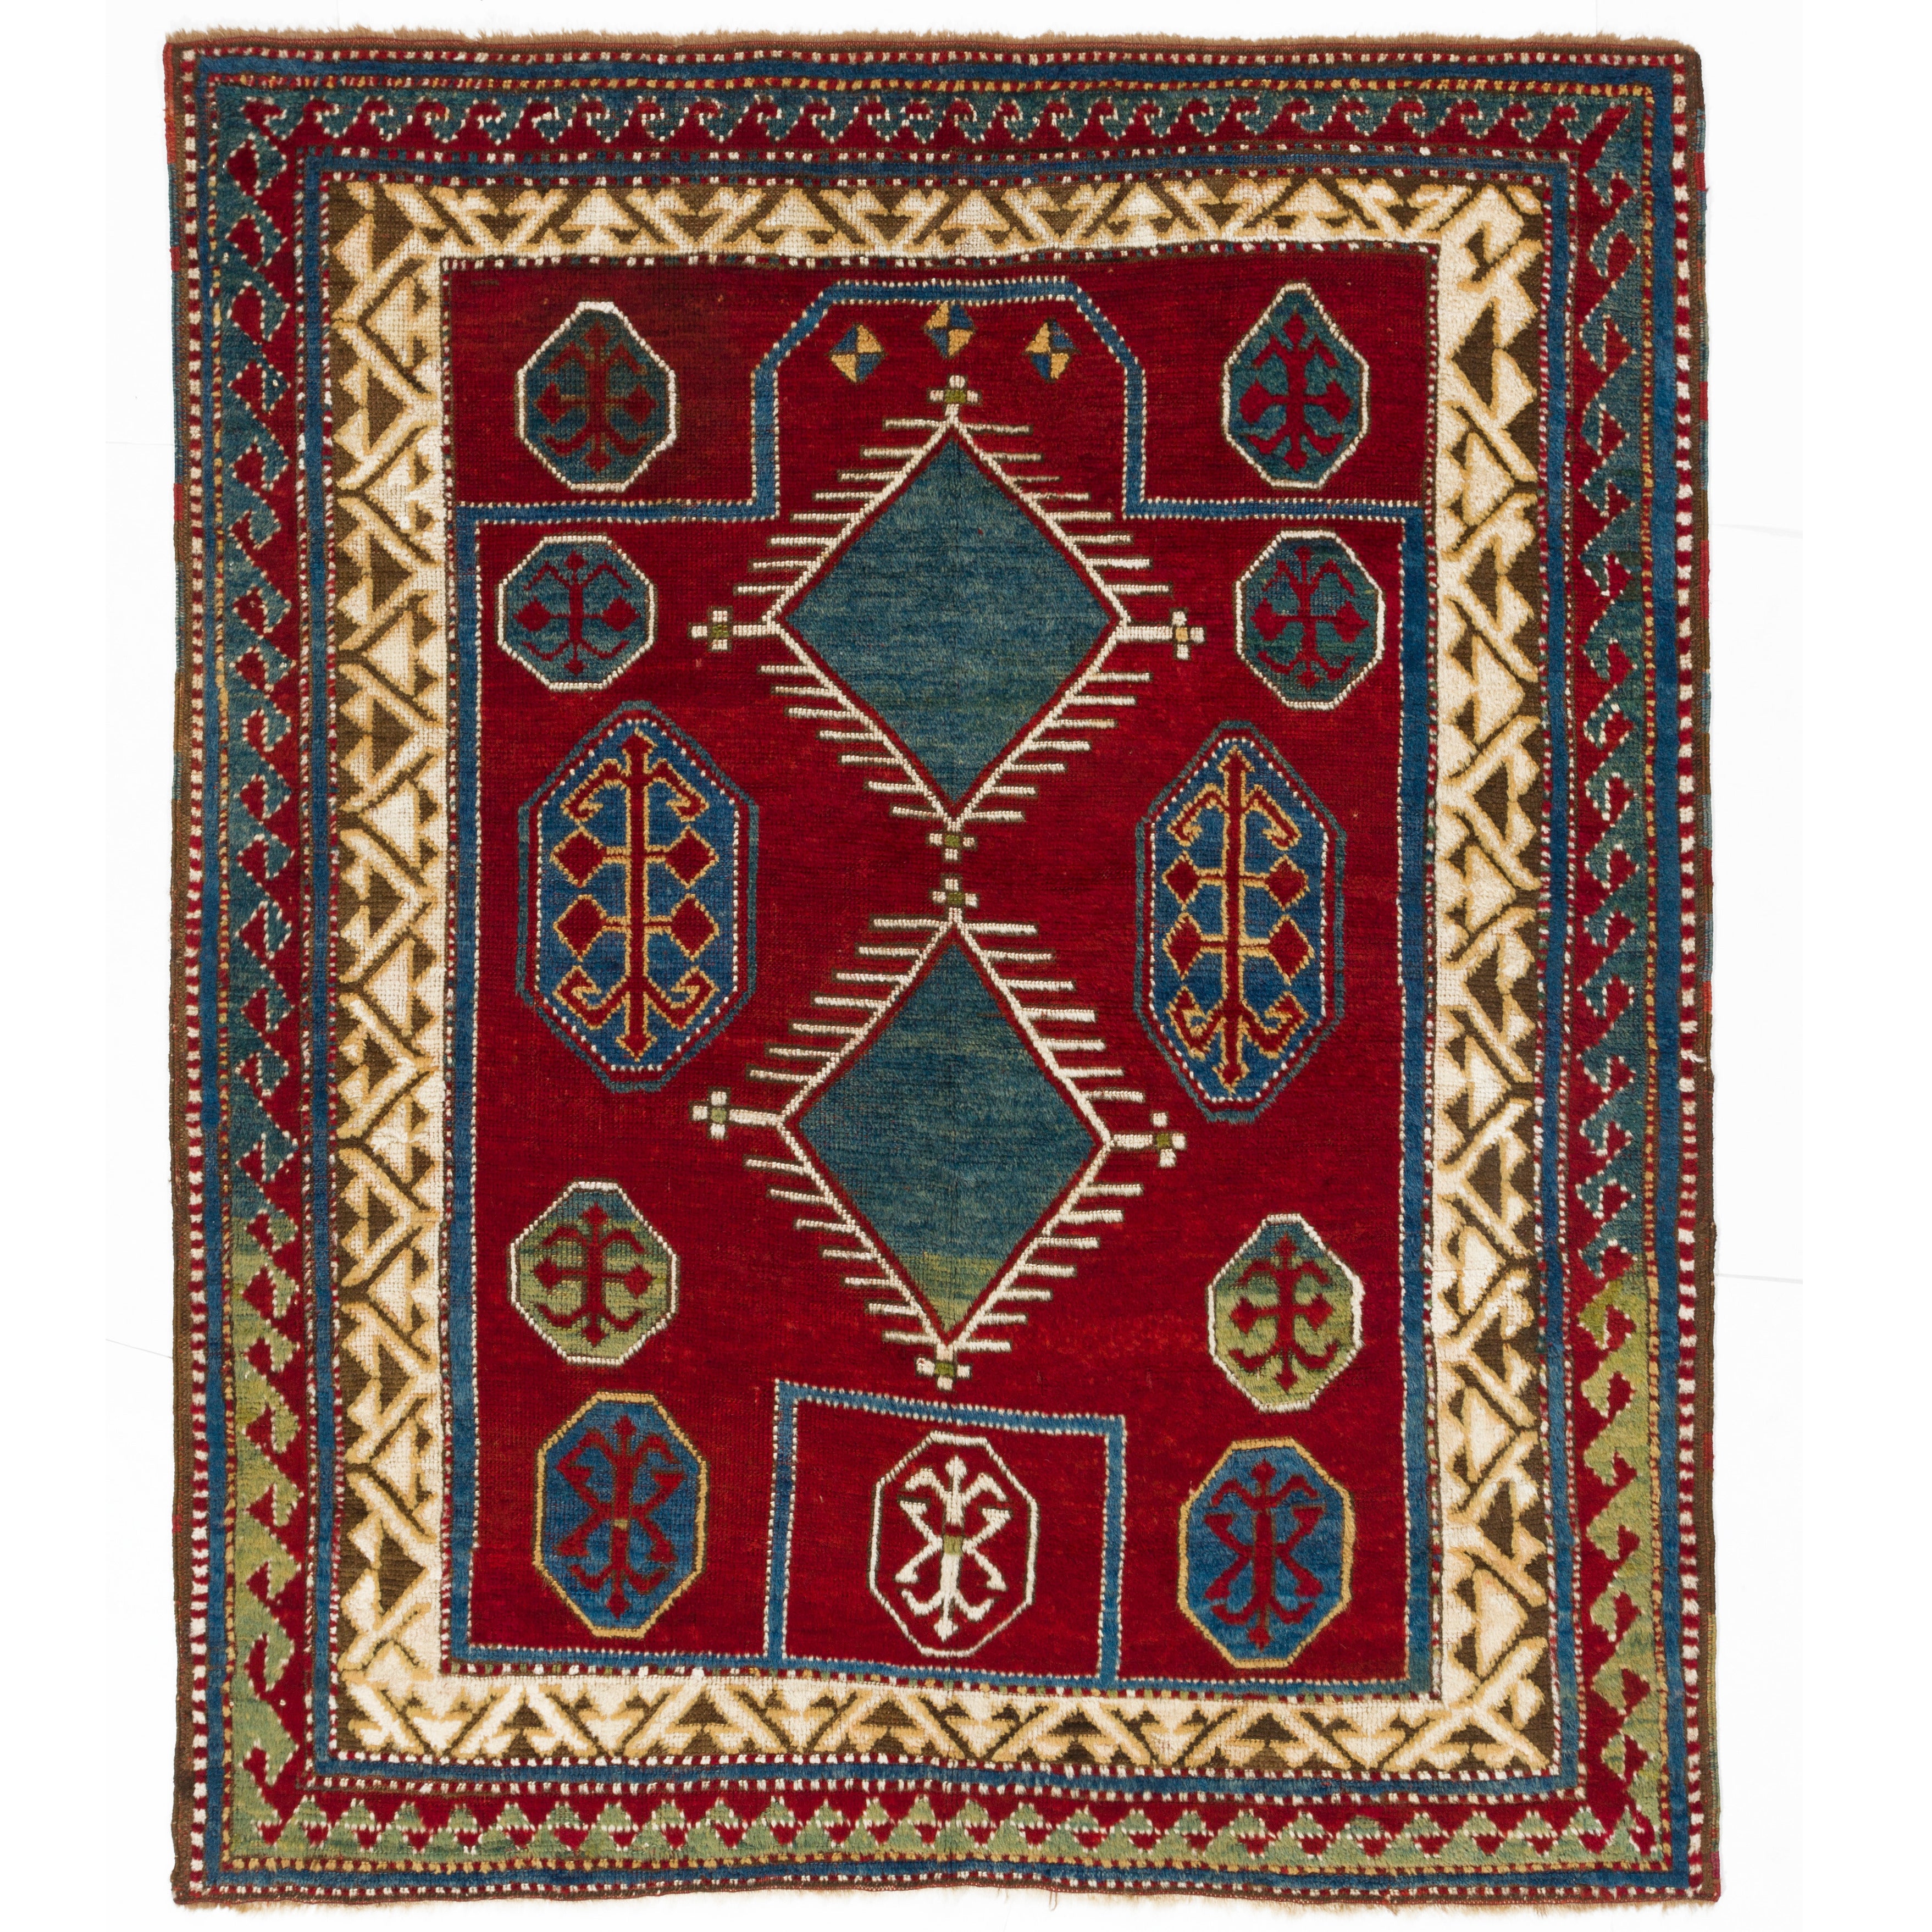 Antique Caucasian Bordjalou Kazak Rug, 19th Century